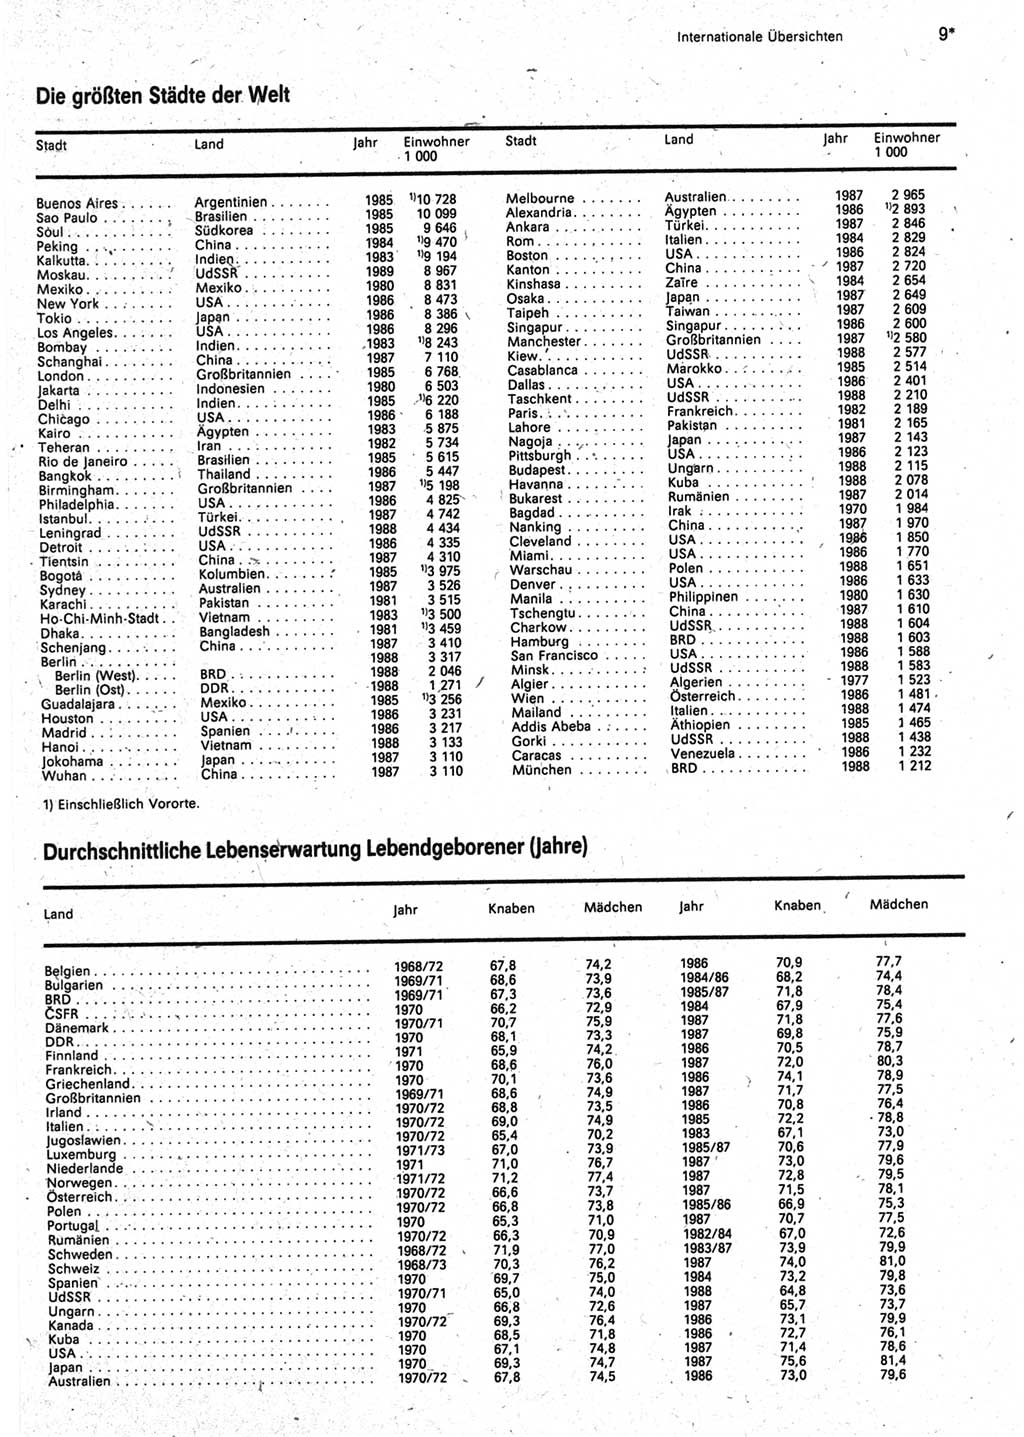 Statistisches Jahrbuch der Deutschen Demokratischen Republik (DDR) 1990, Seite 9 (Stat. Jb. DDR 1990, S. 9)